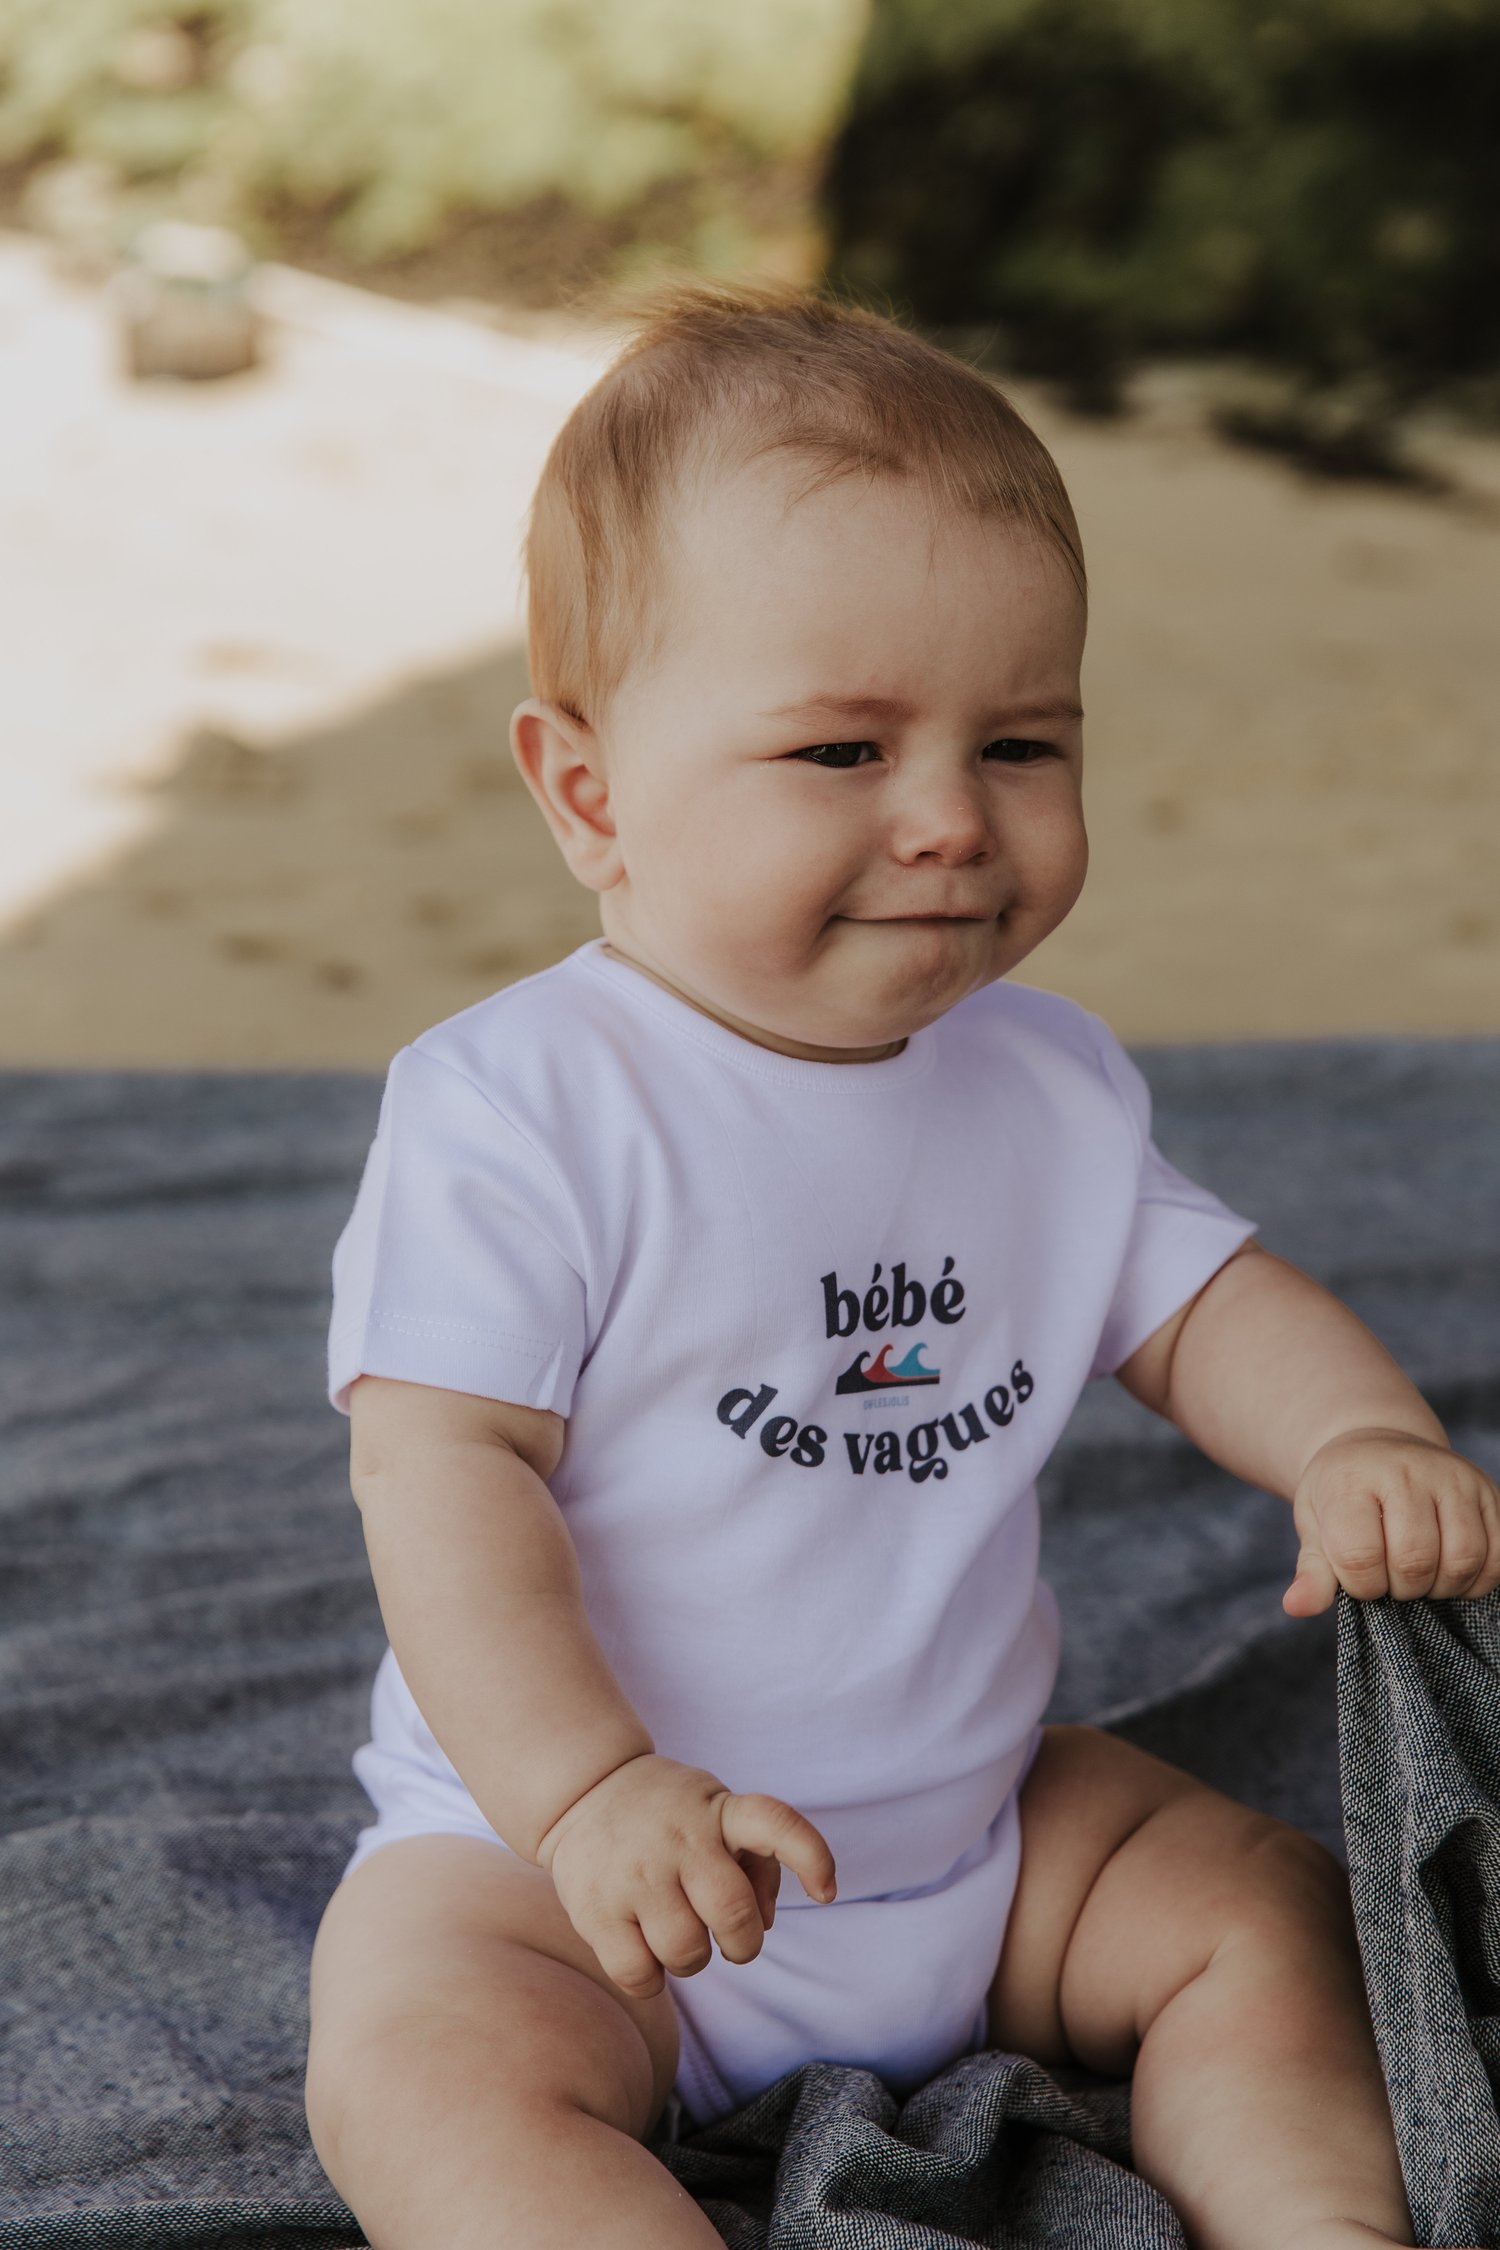 Body bébé des vagues — OH LES JOLIS | Marque française de T-shirts, sweat  shirts et accessoires 100% coton biologique.